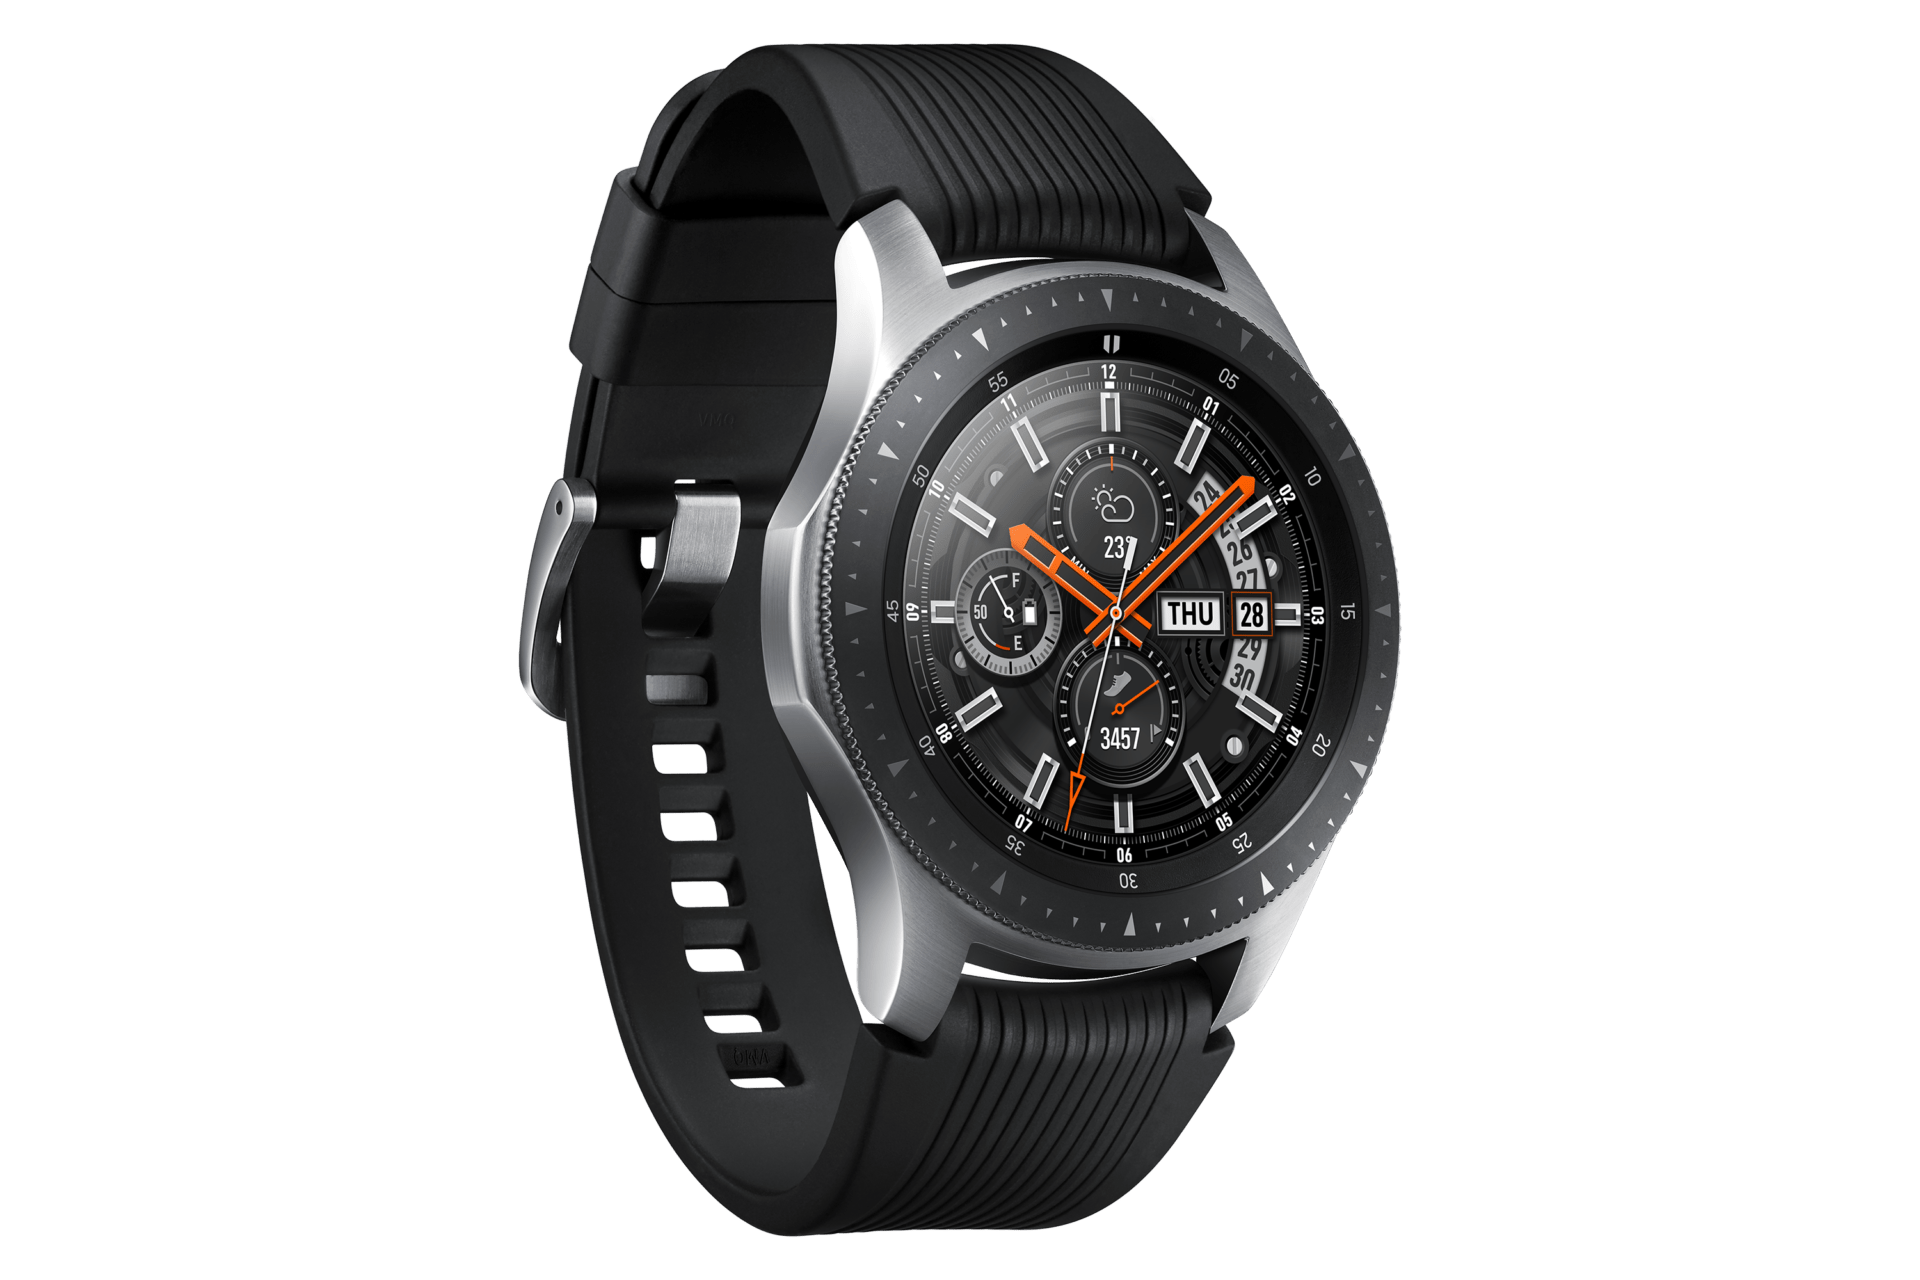 Aggiornamento Software Galaxy Watch: miglioramento user experience